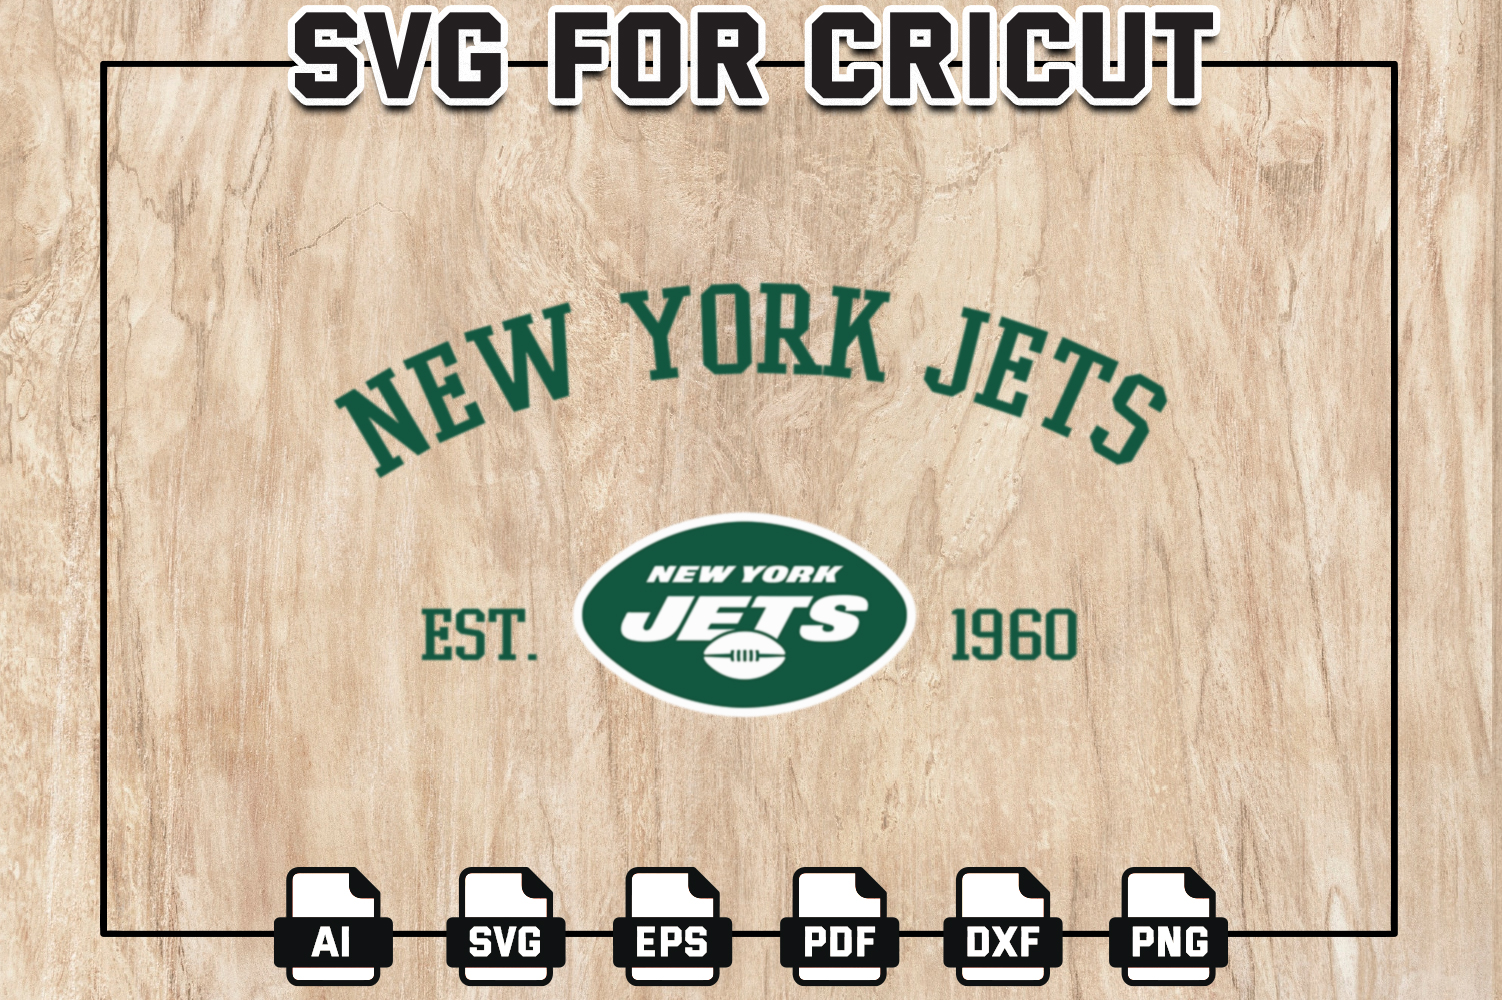 NFL New York Jets Est. 1960 SVG, NFL Logo SVG Design, NFL Jets SVG, Cricut,  Silhouette, Digital Download